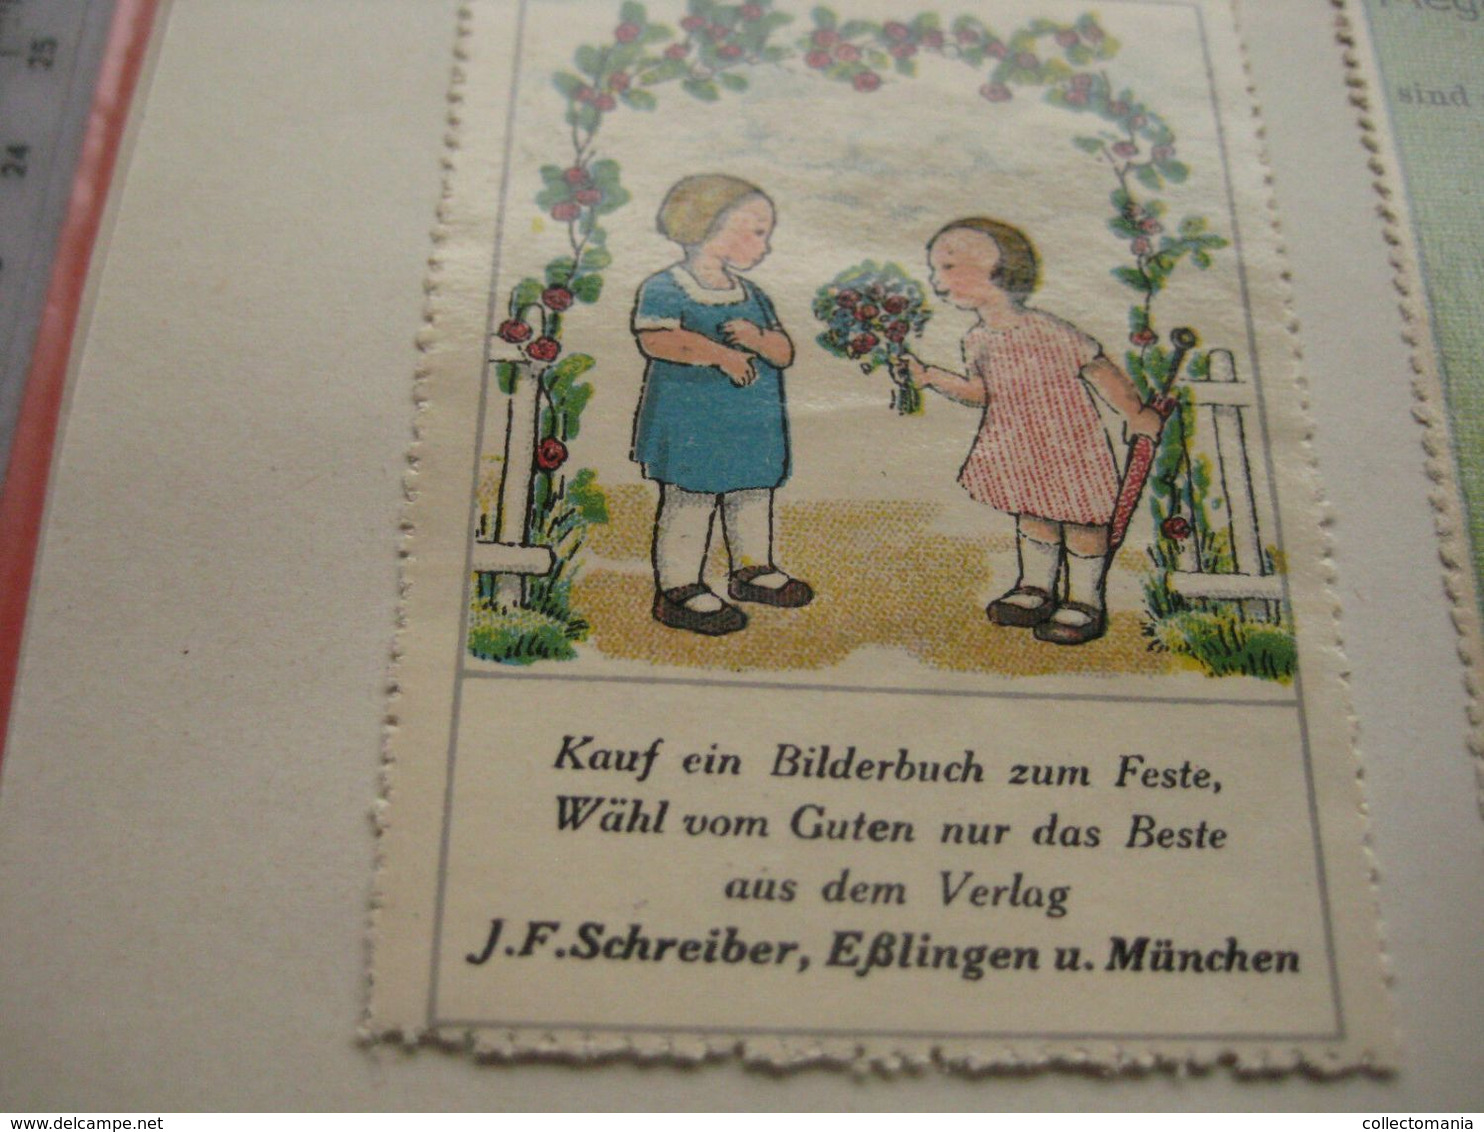 6 POSTER STAMPS anno1913  Cinderella advertising vignettes art OLFERS BILDERBUCHEN Schreiber in Eslingen ART books